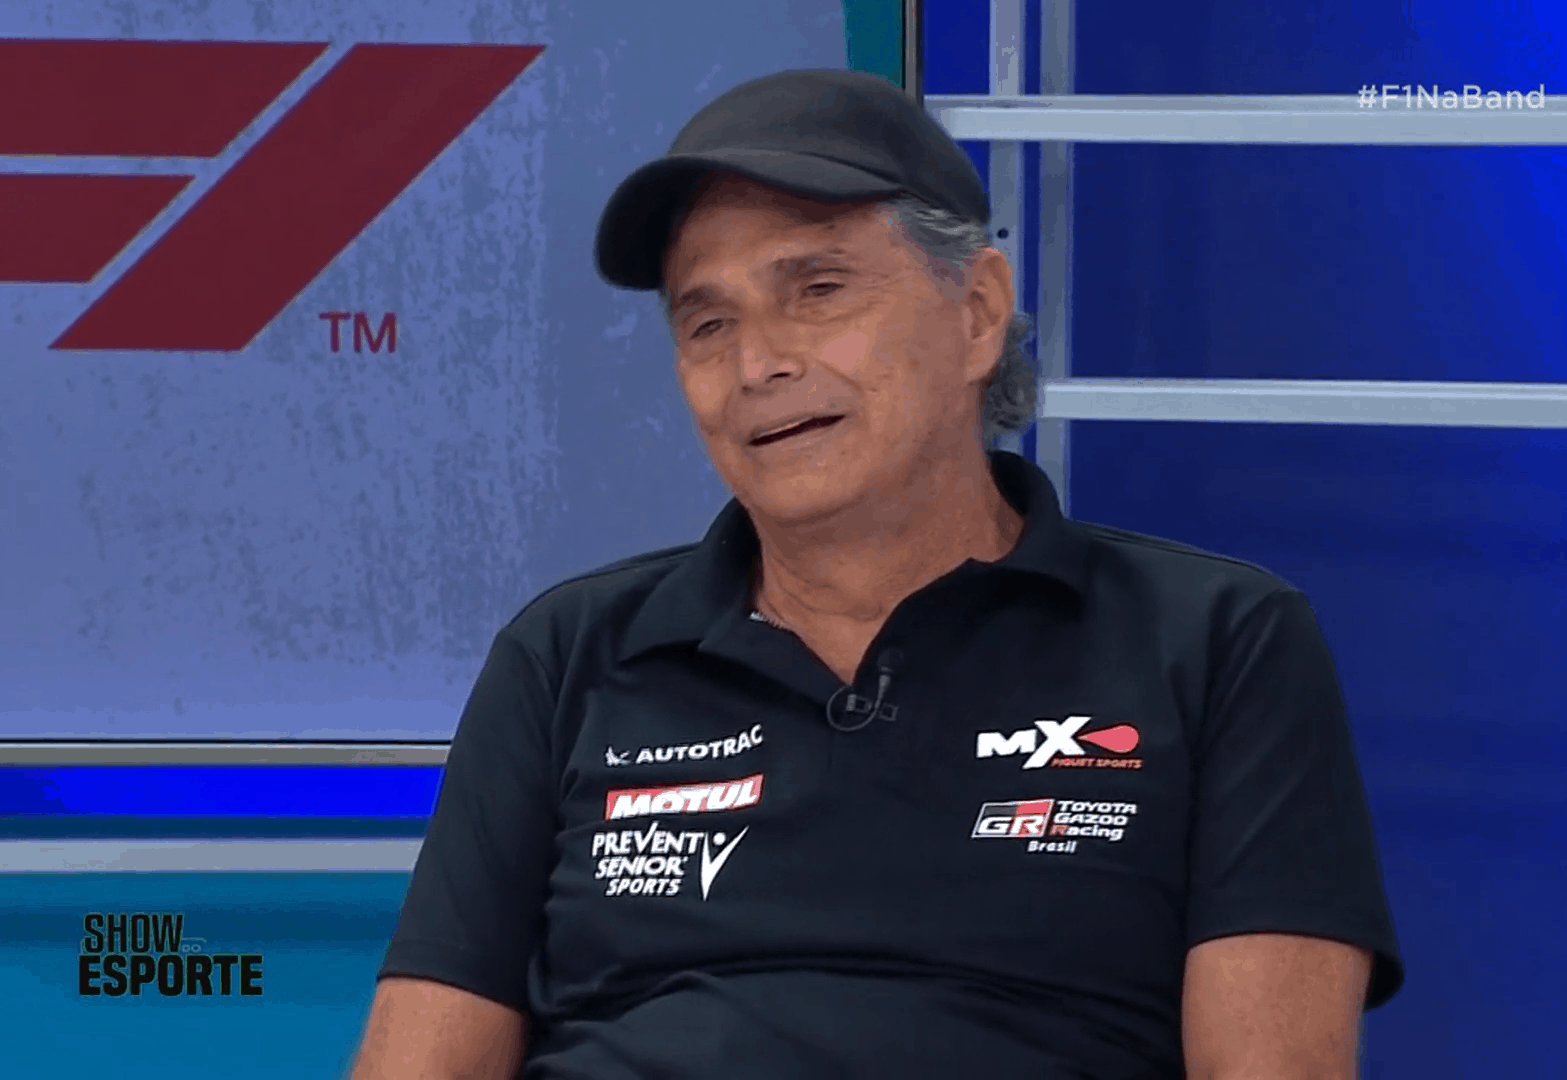 Nelson Piquet solta “Globo lixo” em estreia da F1 na Band e deixa apresentadora sem graça